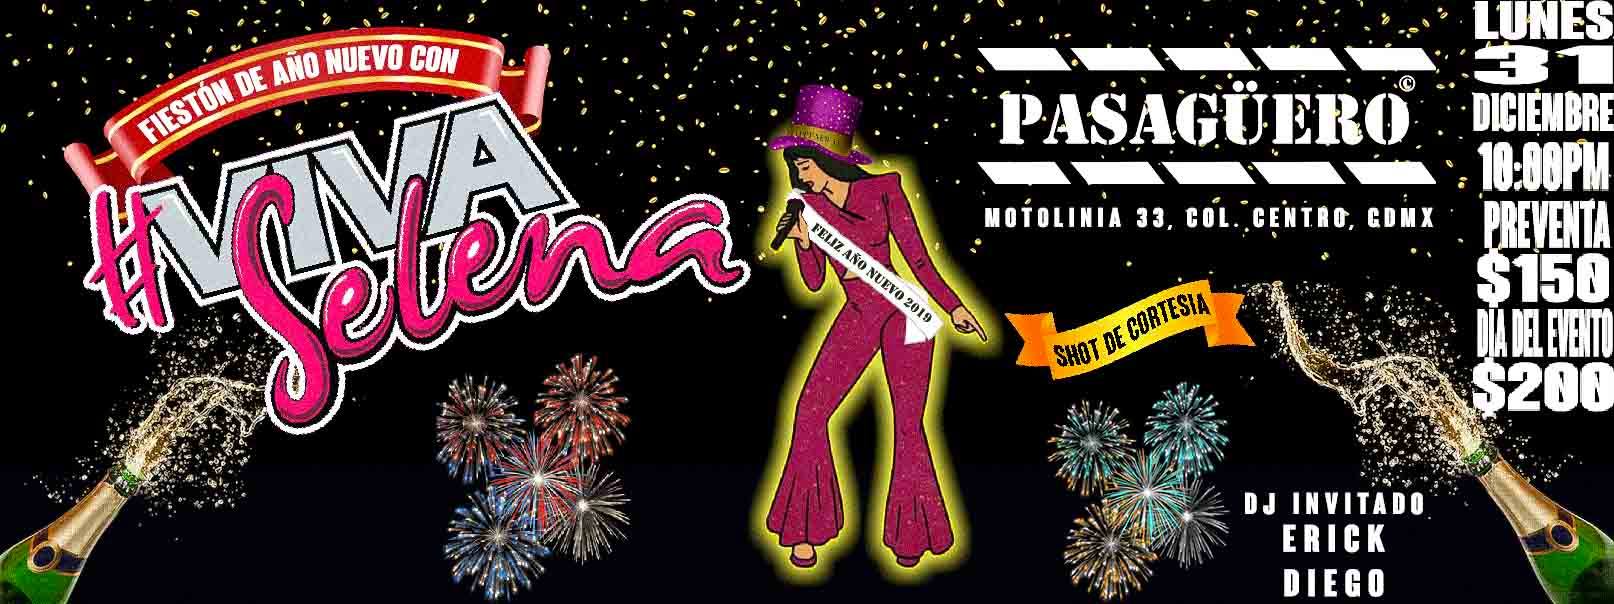 lugares-para-festejar-ano-nuevo-fiesta-after-cdmx-2019